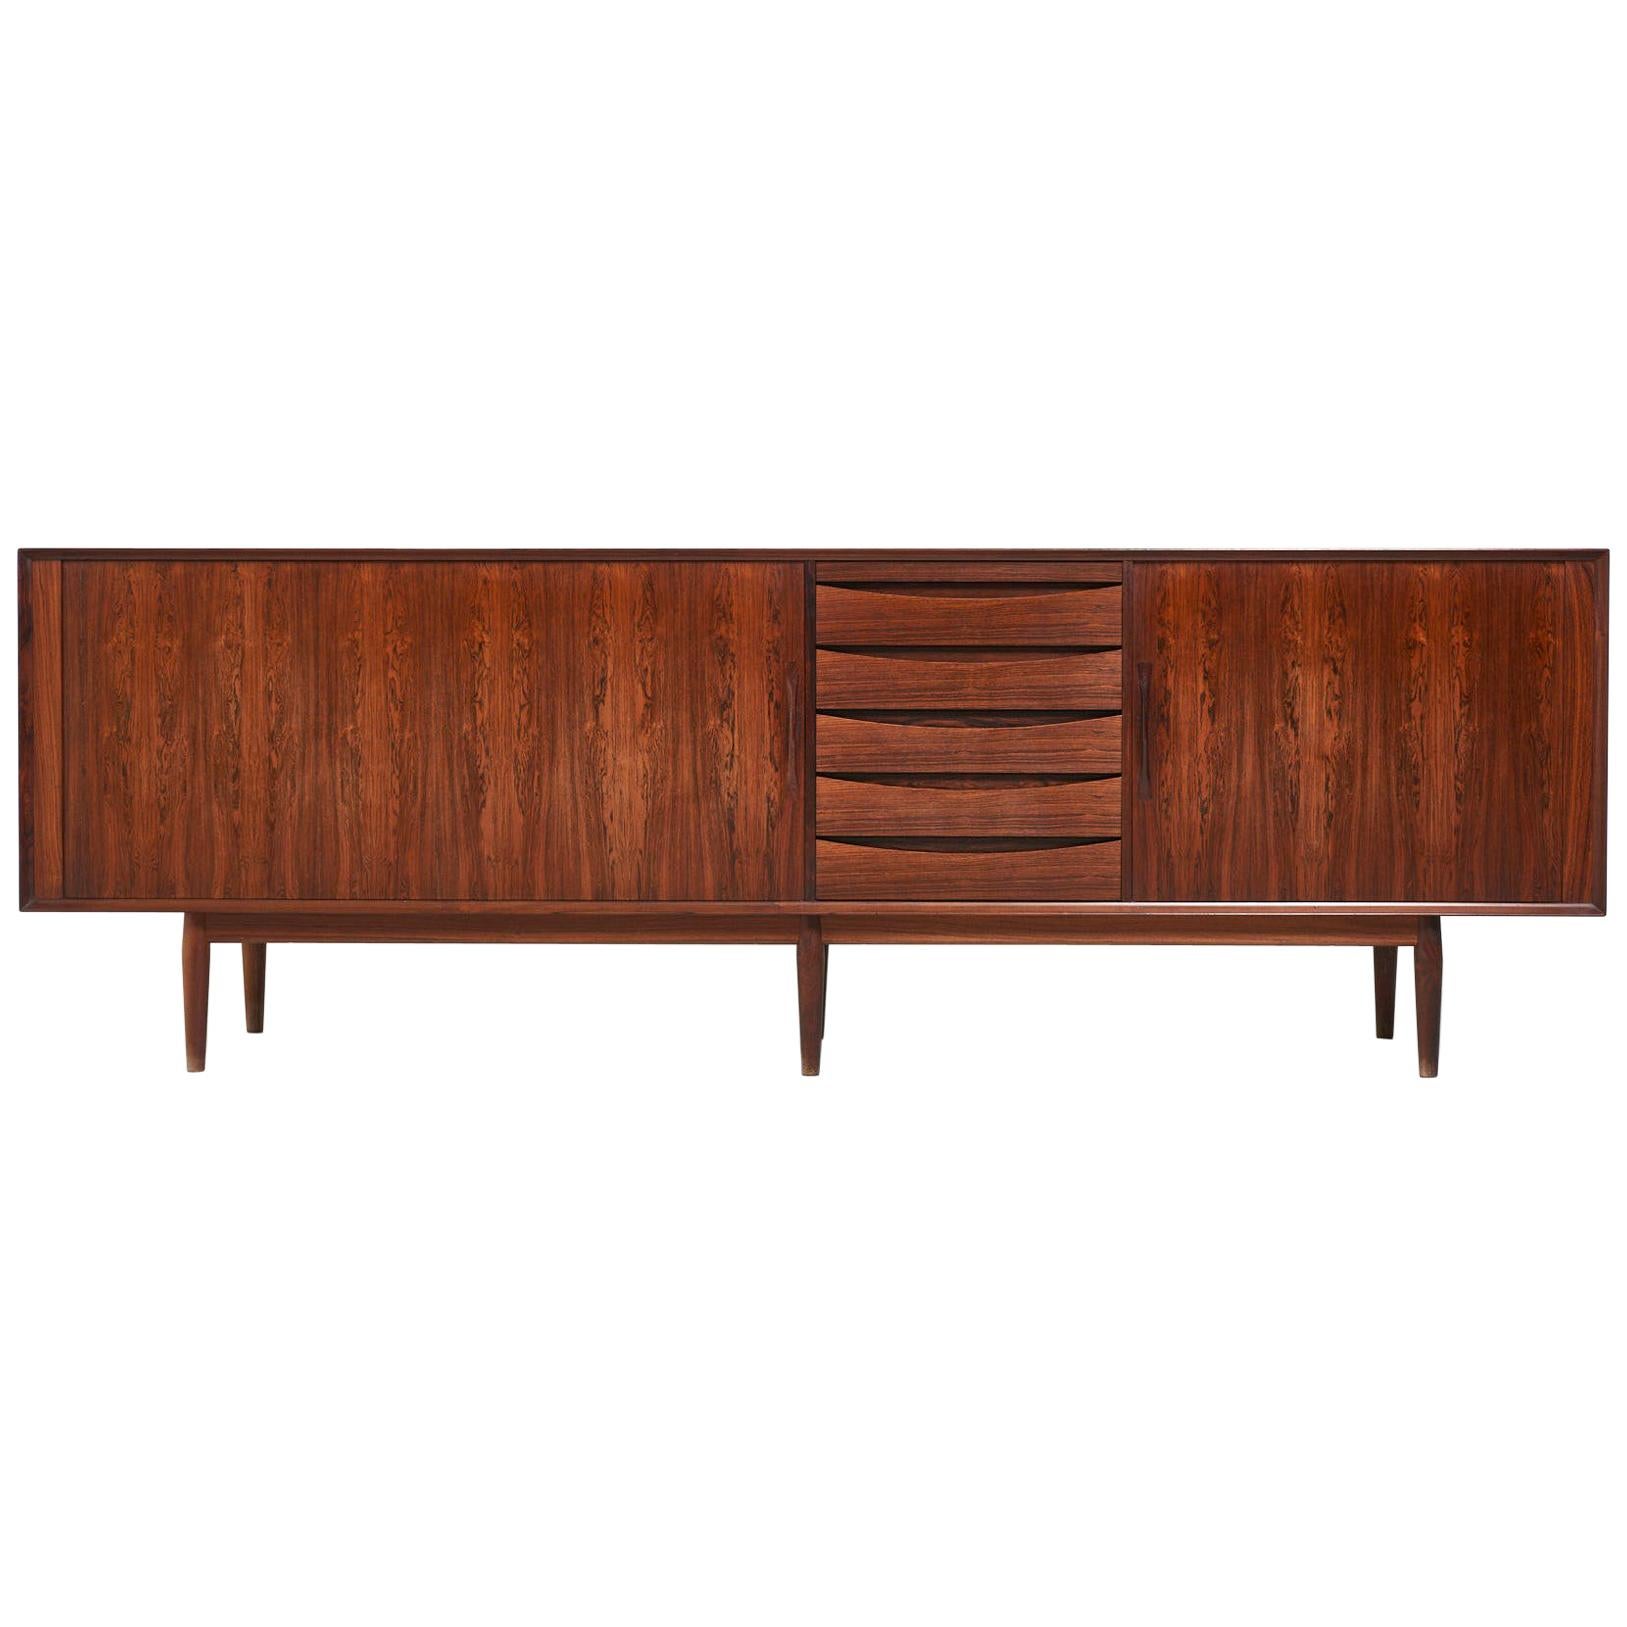 Model 76 Sideboard by Arne Vodder for Sibast Furniture